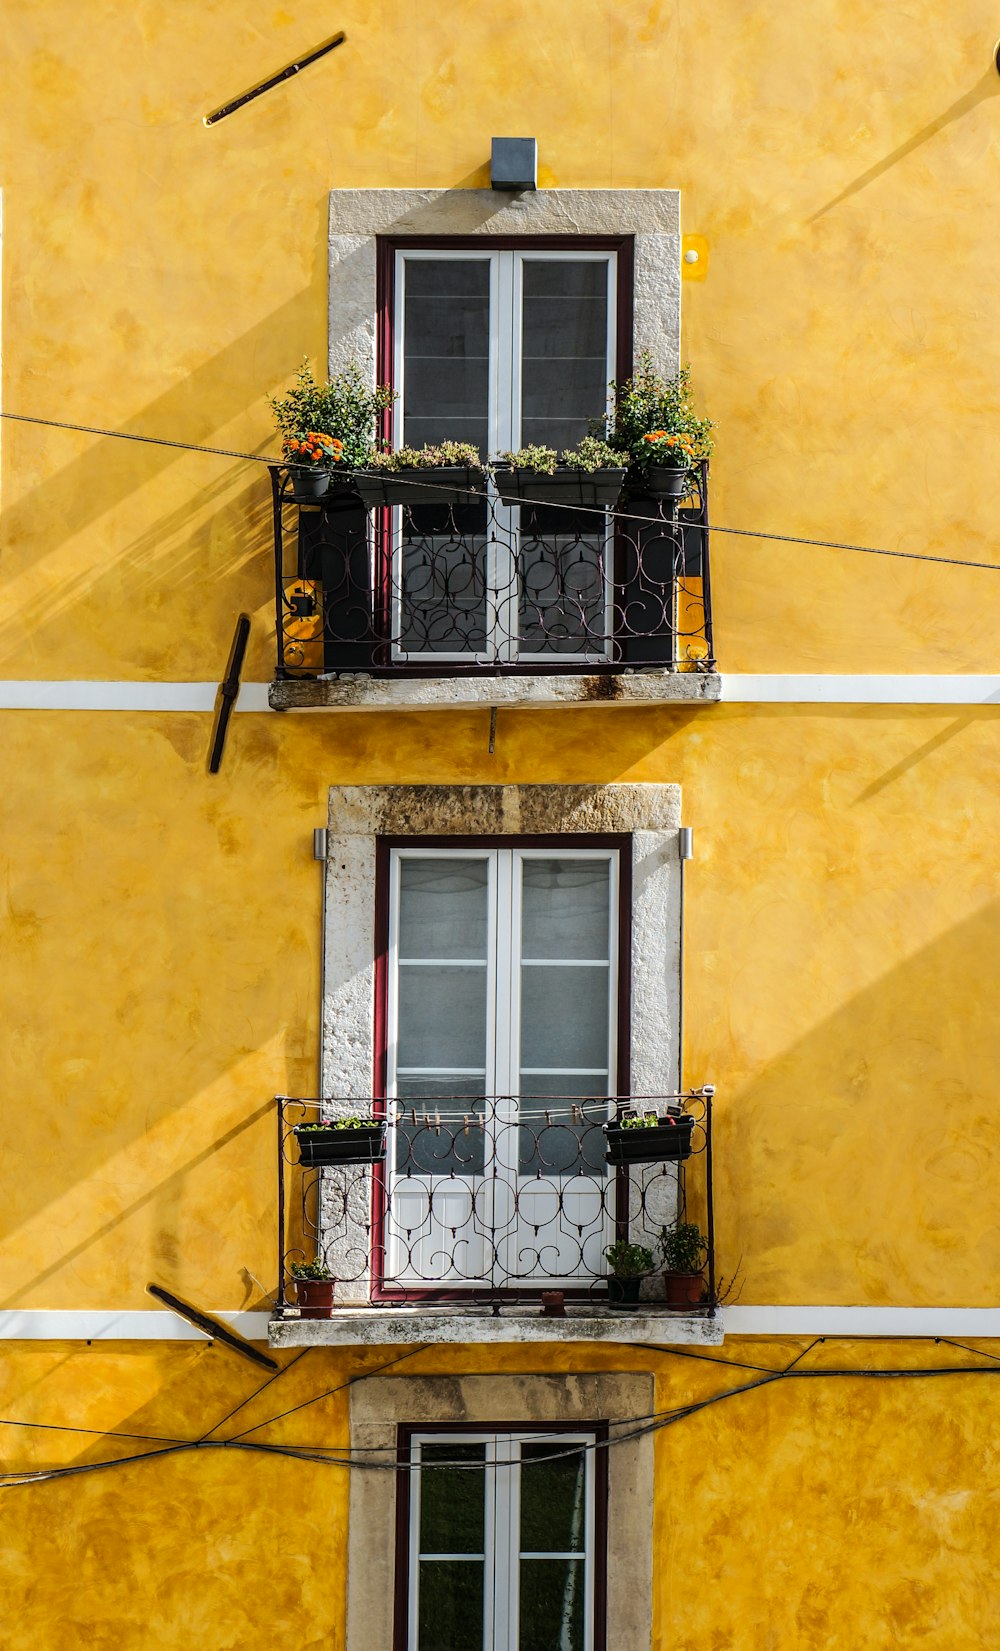 panneaux de fenêtre en bois blanc et mur peint en jaune